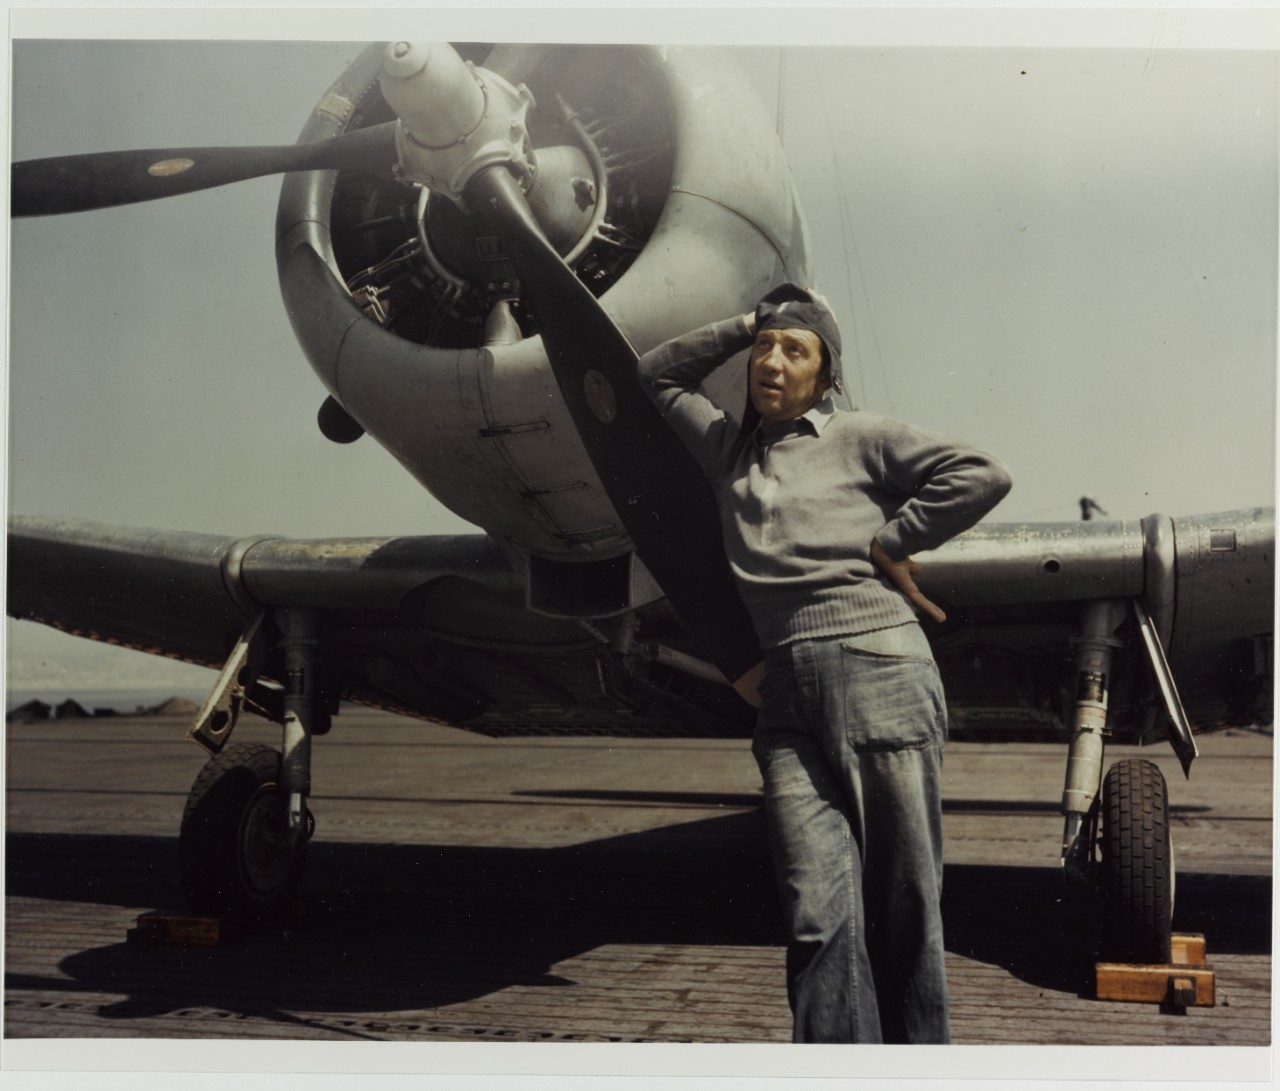 "Spoiler, the Original Flight Deck Dope", circa 1943-1945